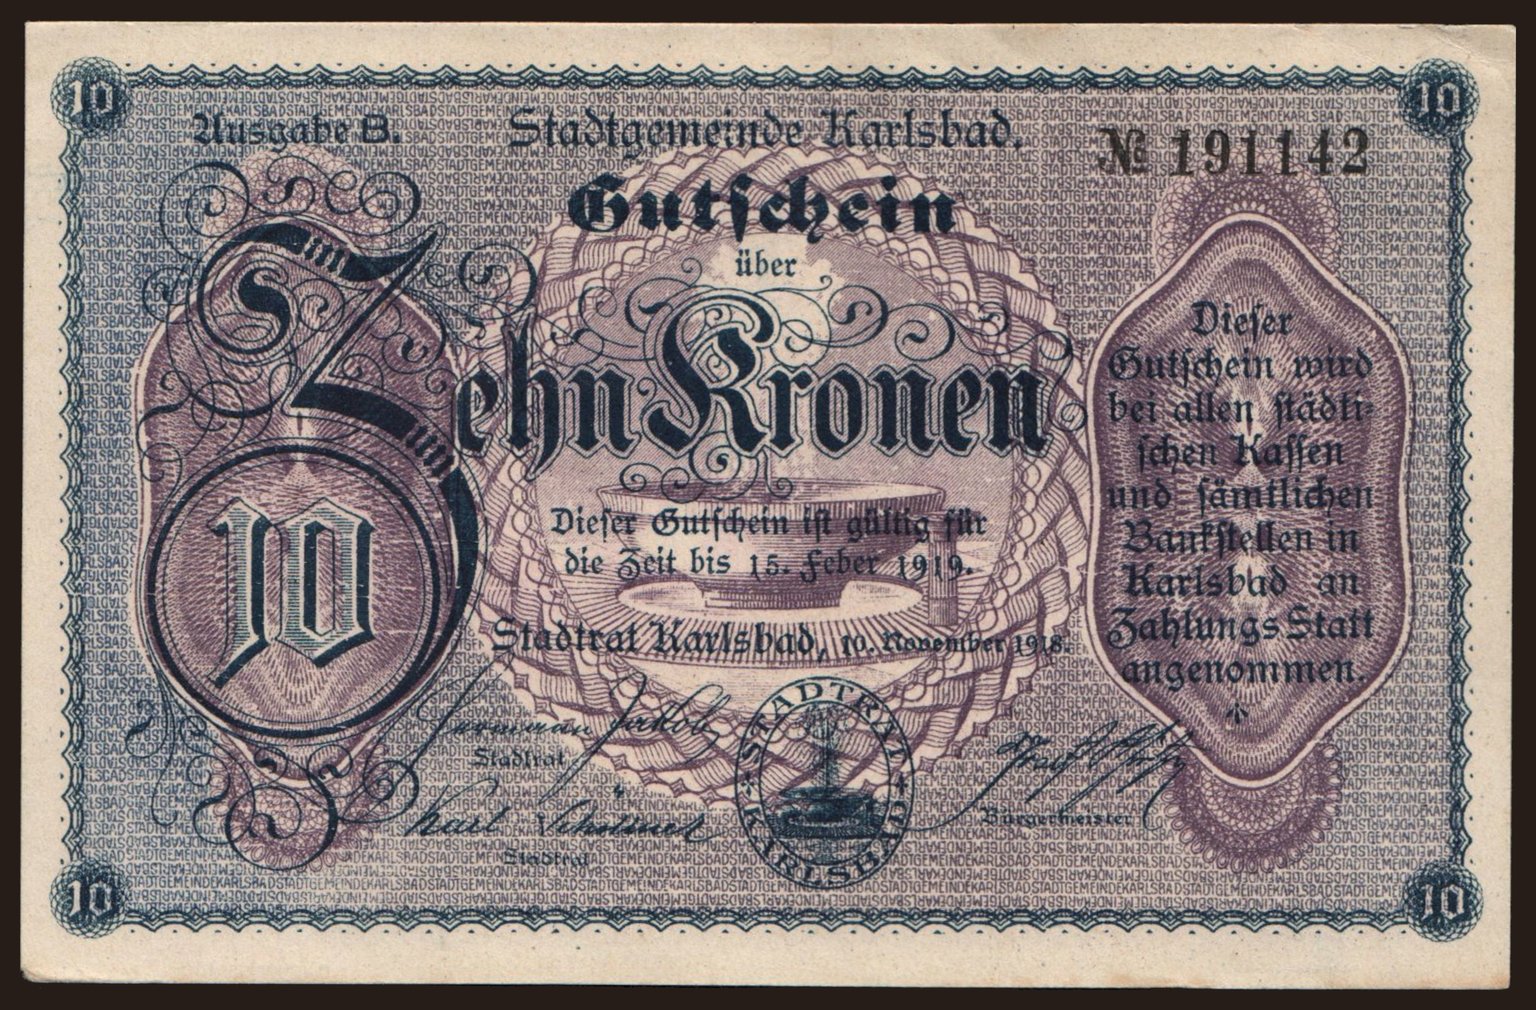 Karlsbad, 10 Kronen, 1918